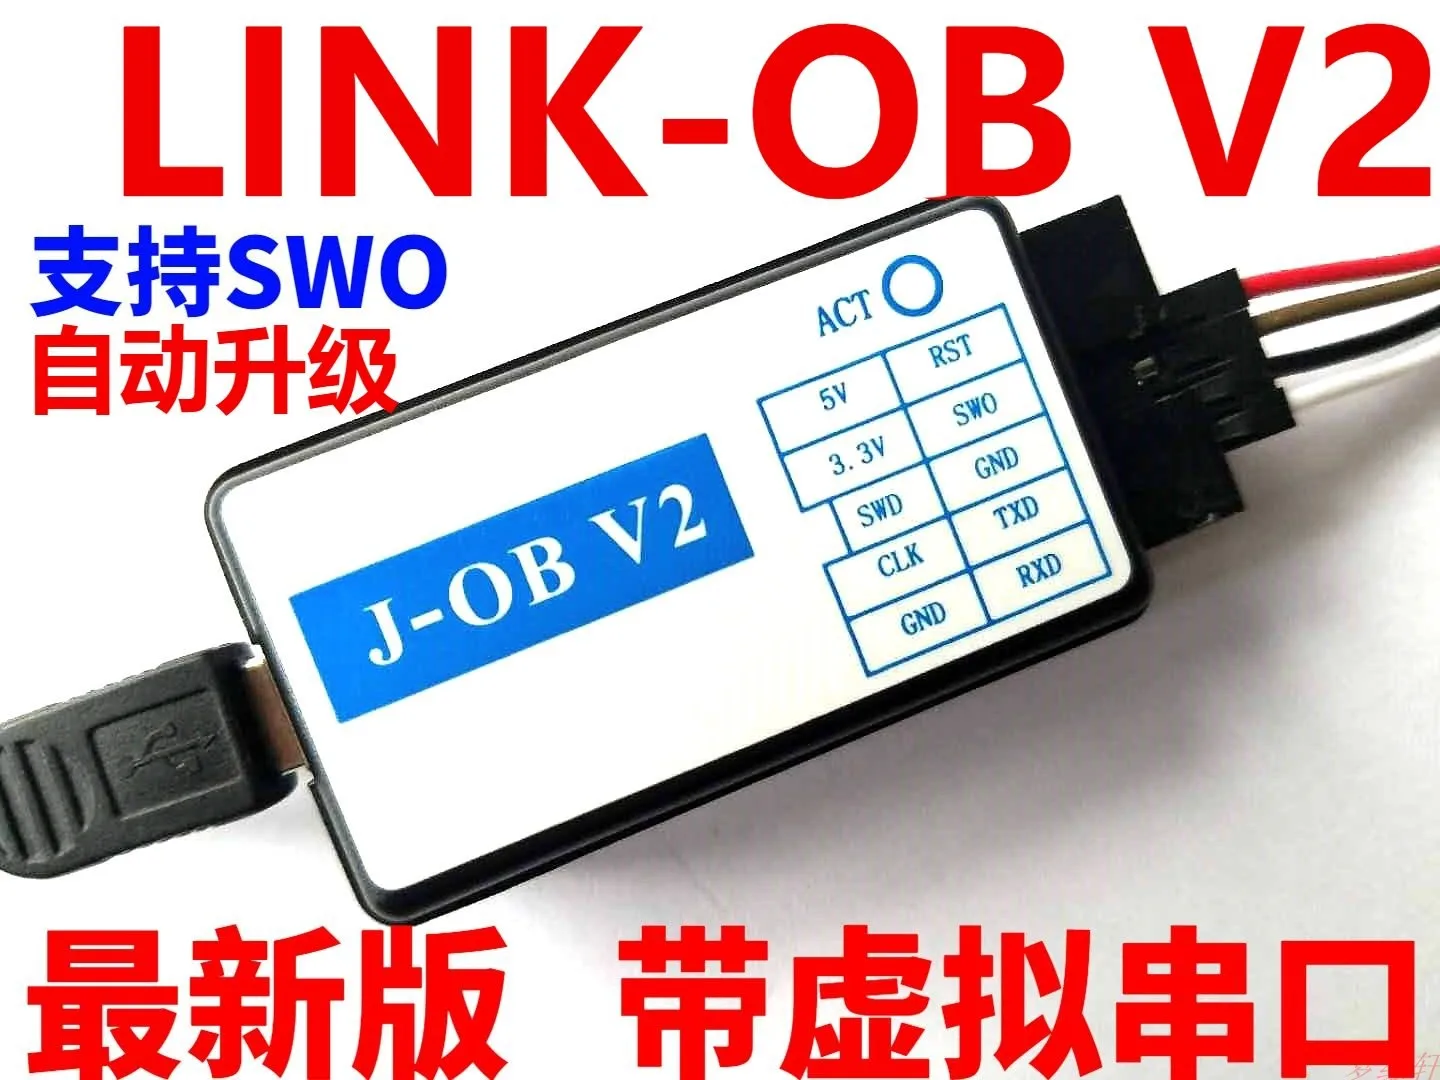 J-OB V2 JLINK OB J-LINK V8 V9 V9.3 STLINK Compatible with Virtual Serial Port